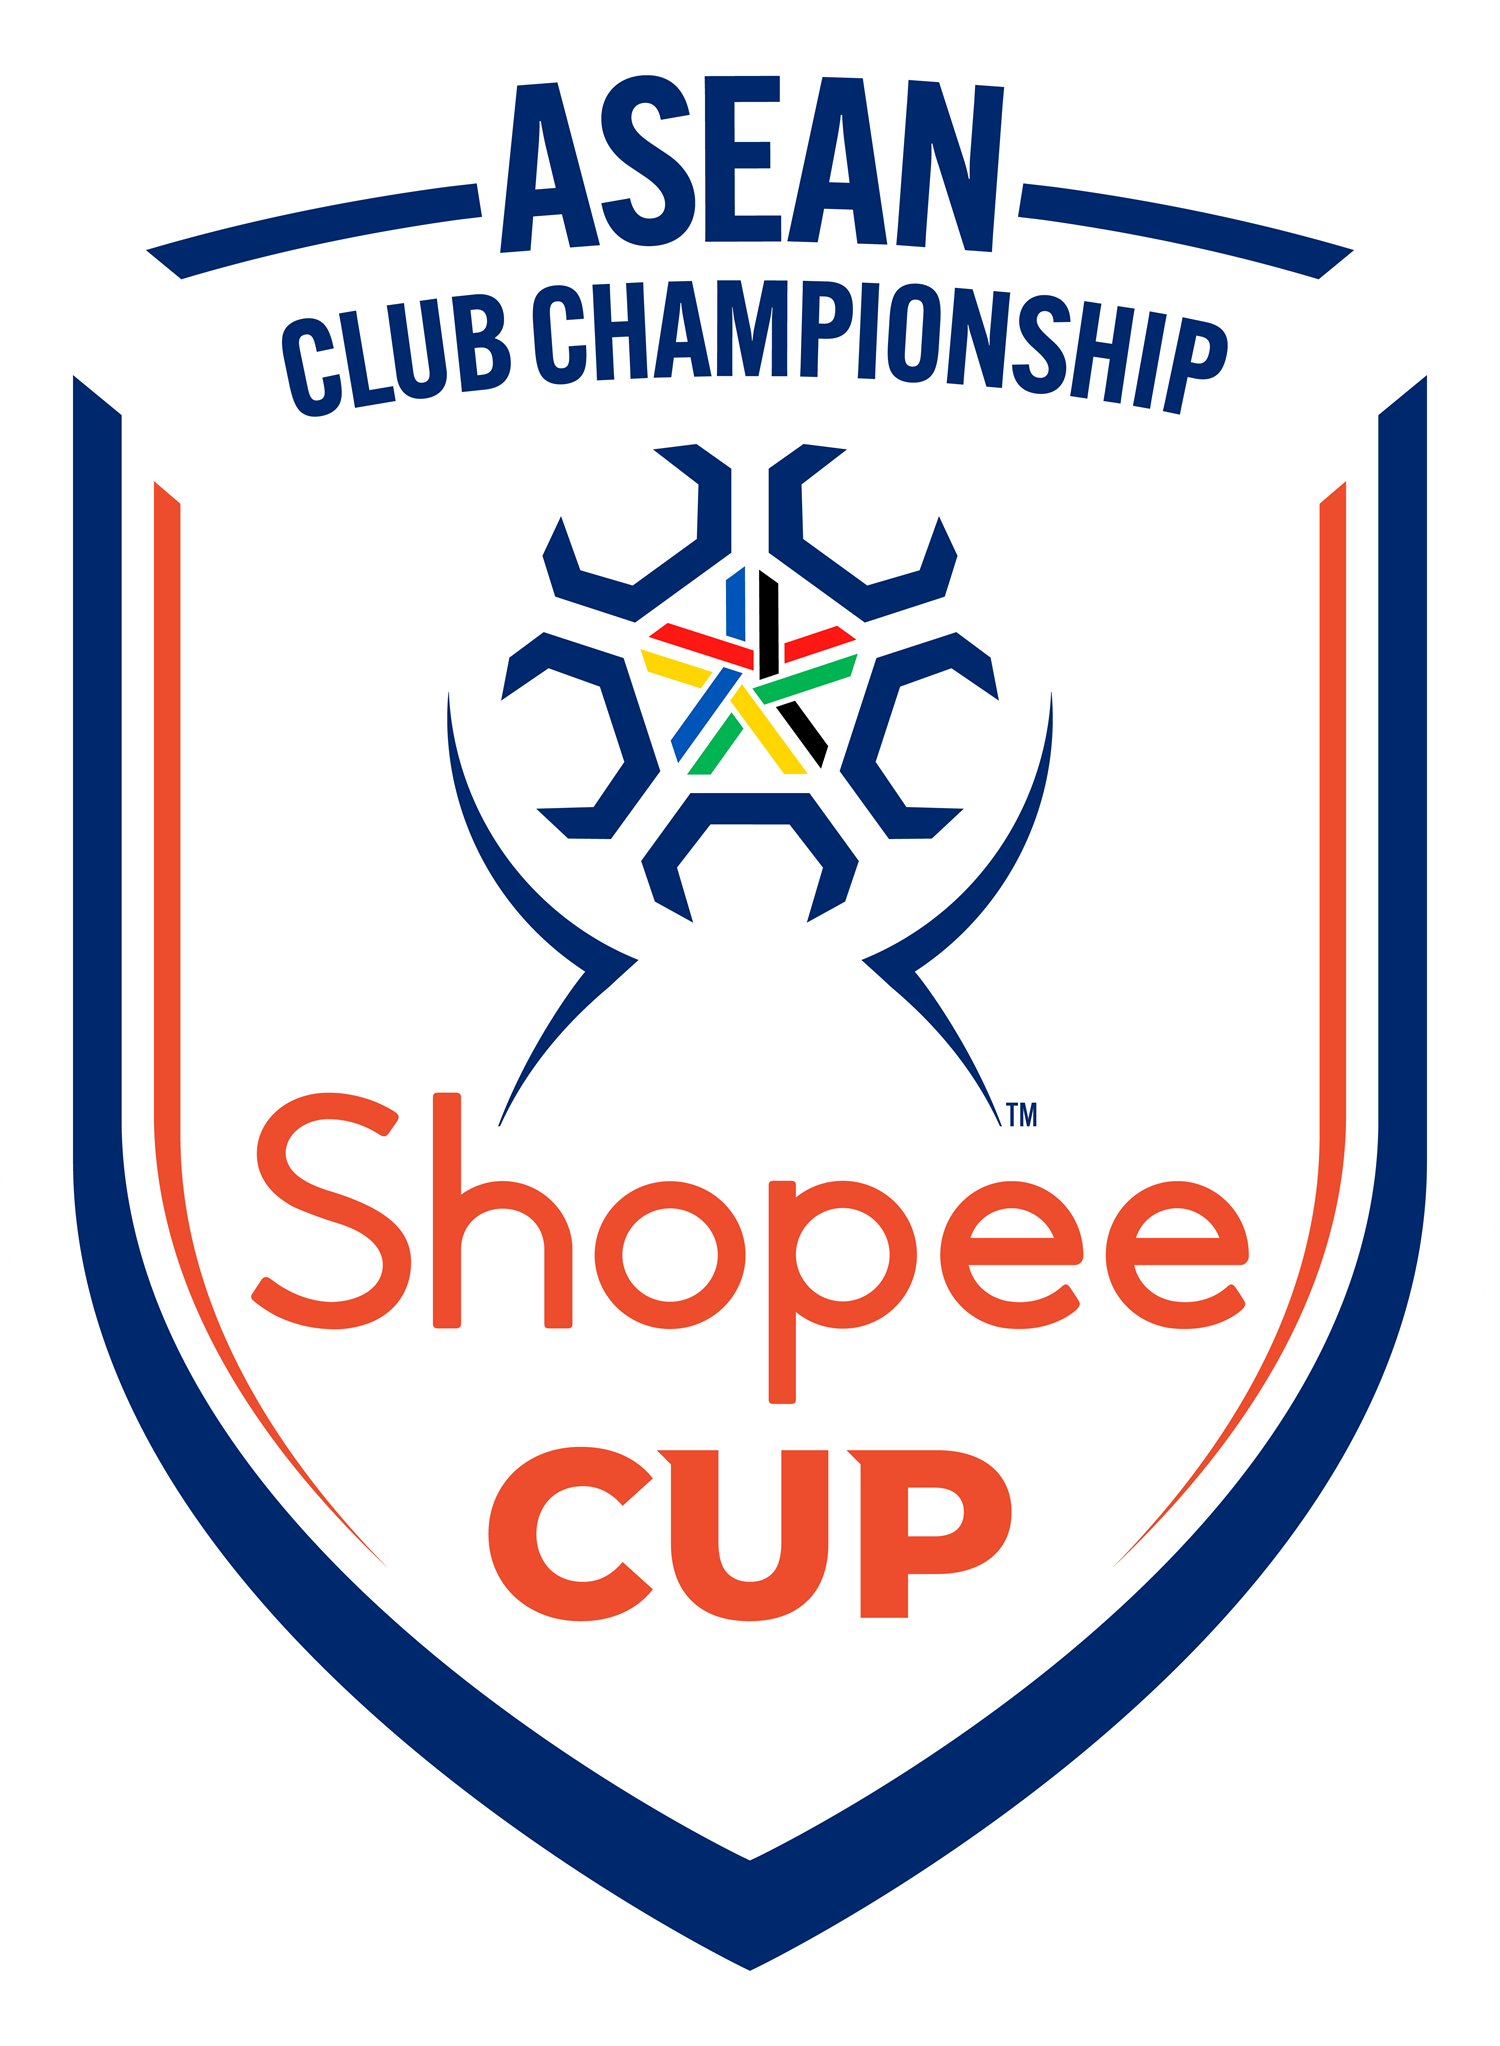 Logo Shopee Cup. Major General Khiev Sameth, President of ASEAN Football Federation (AFF), menyampaikan bahwa momen ini menandai langkah bersejarah bagi sepak bola ASEAN. Shopee Cup™ akan menjadi aspek penting dalam menciptakan masa depan yang menarik bagi klub sepak bola ASEAN dan mentransformasi i